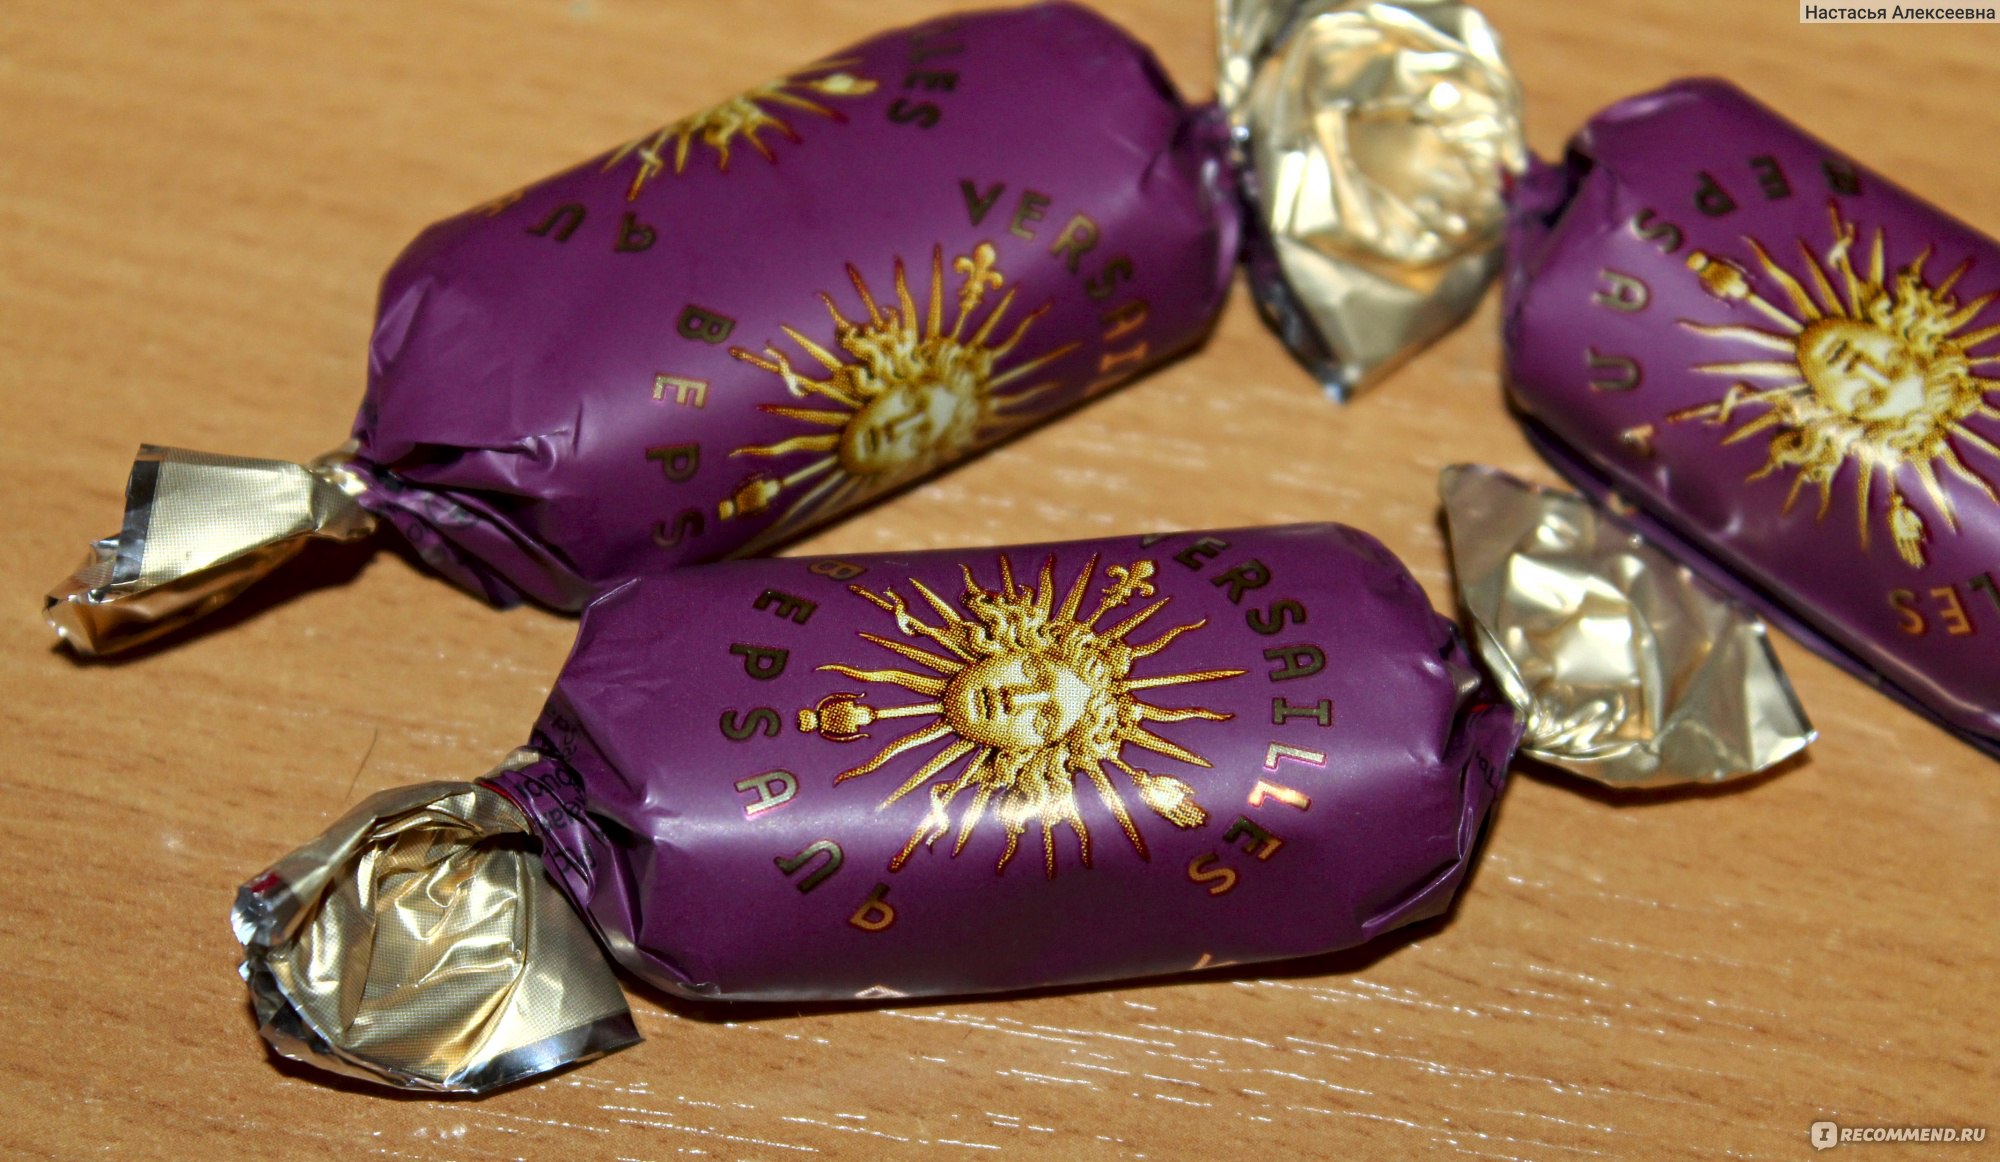 Шоколадные конфеты Версаль